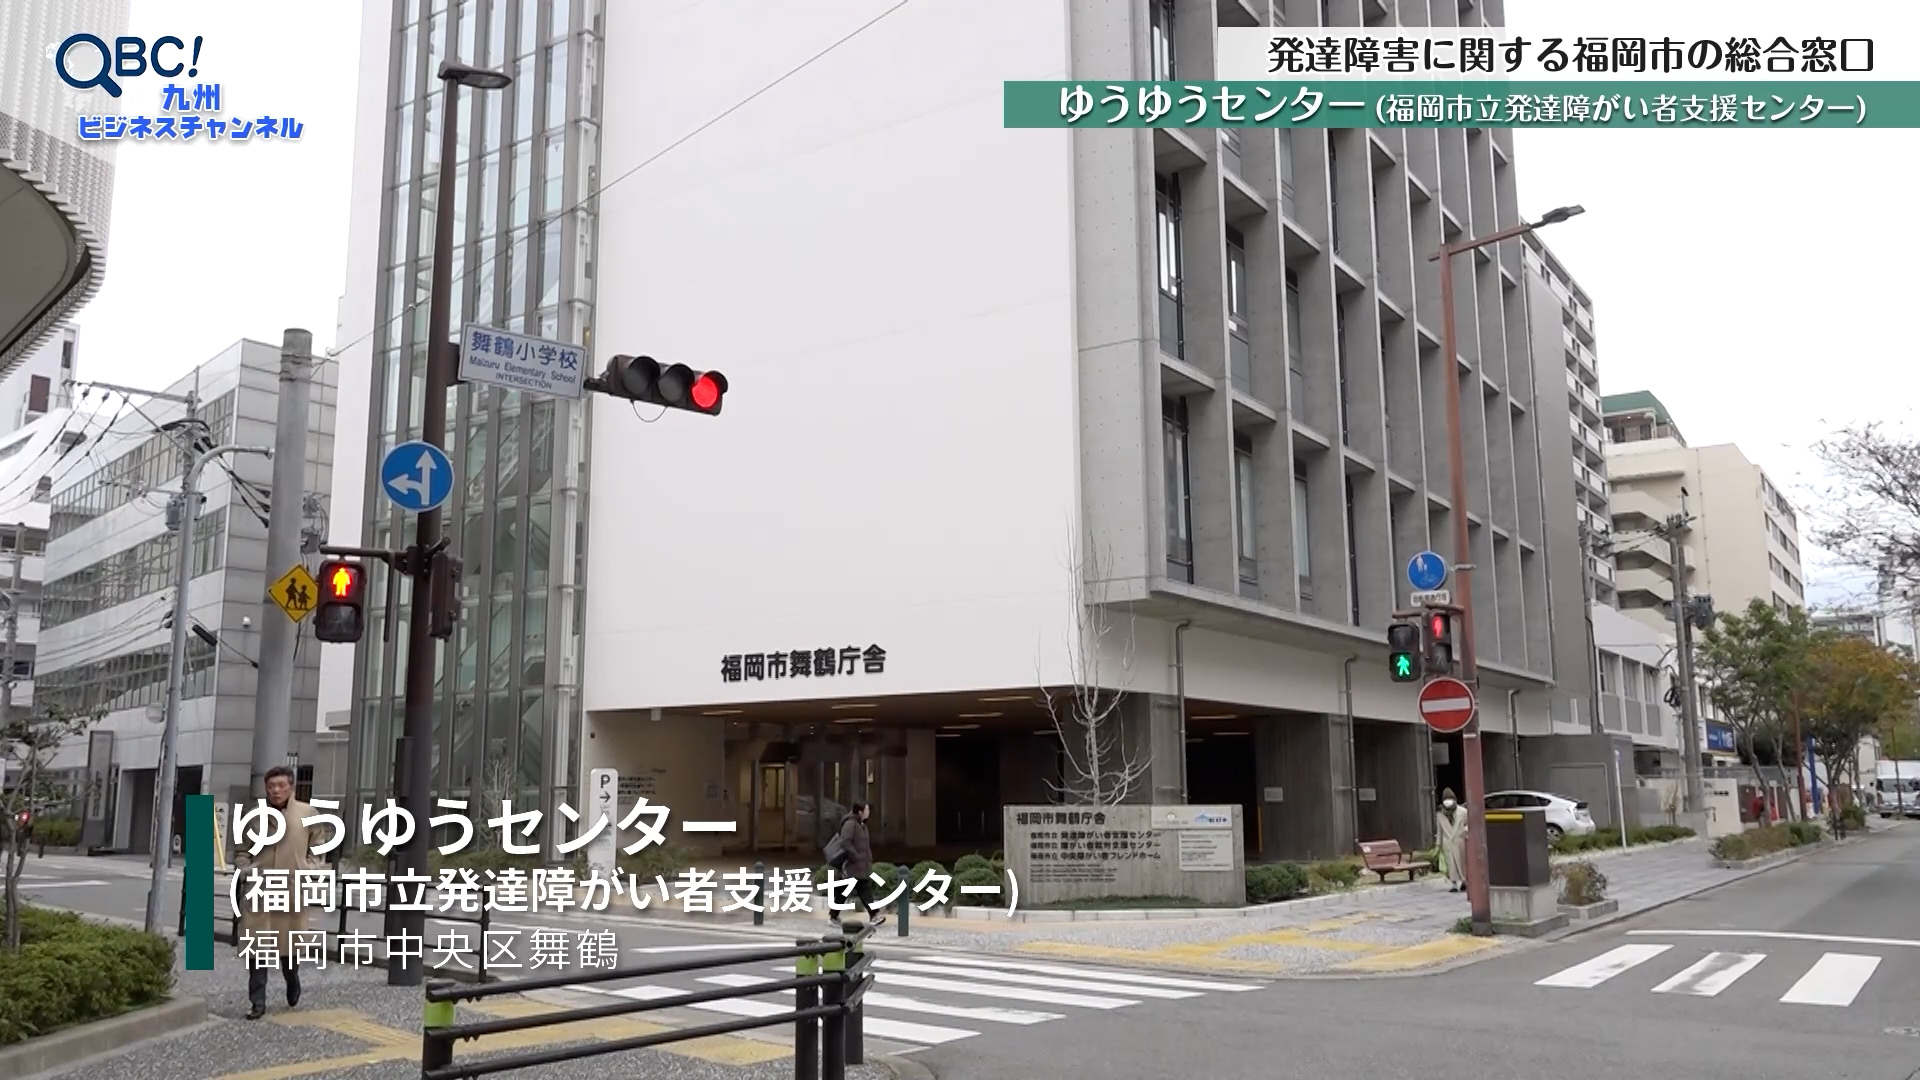 発達障害に関する福岡市の総合窓口「ゆうゆうセンター」